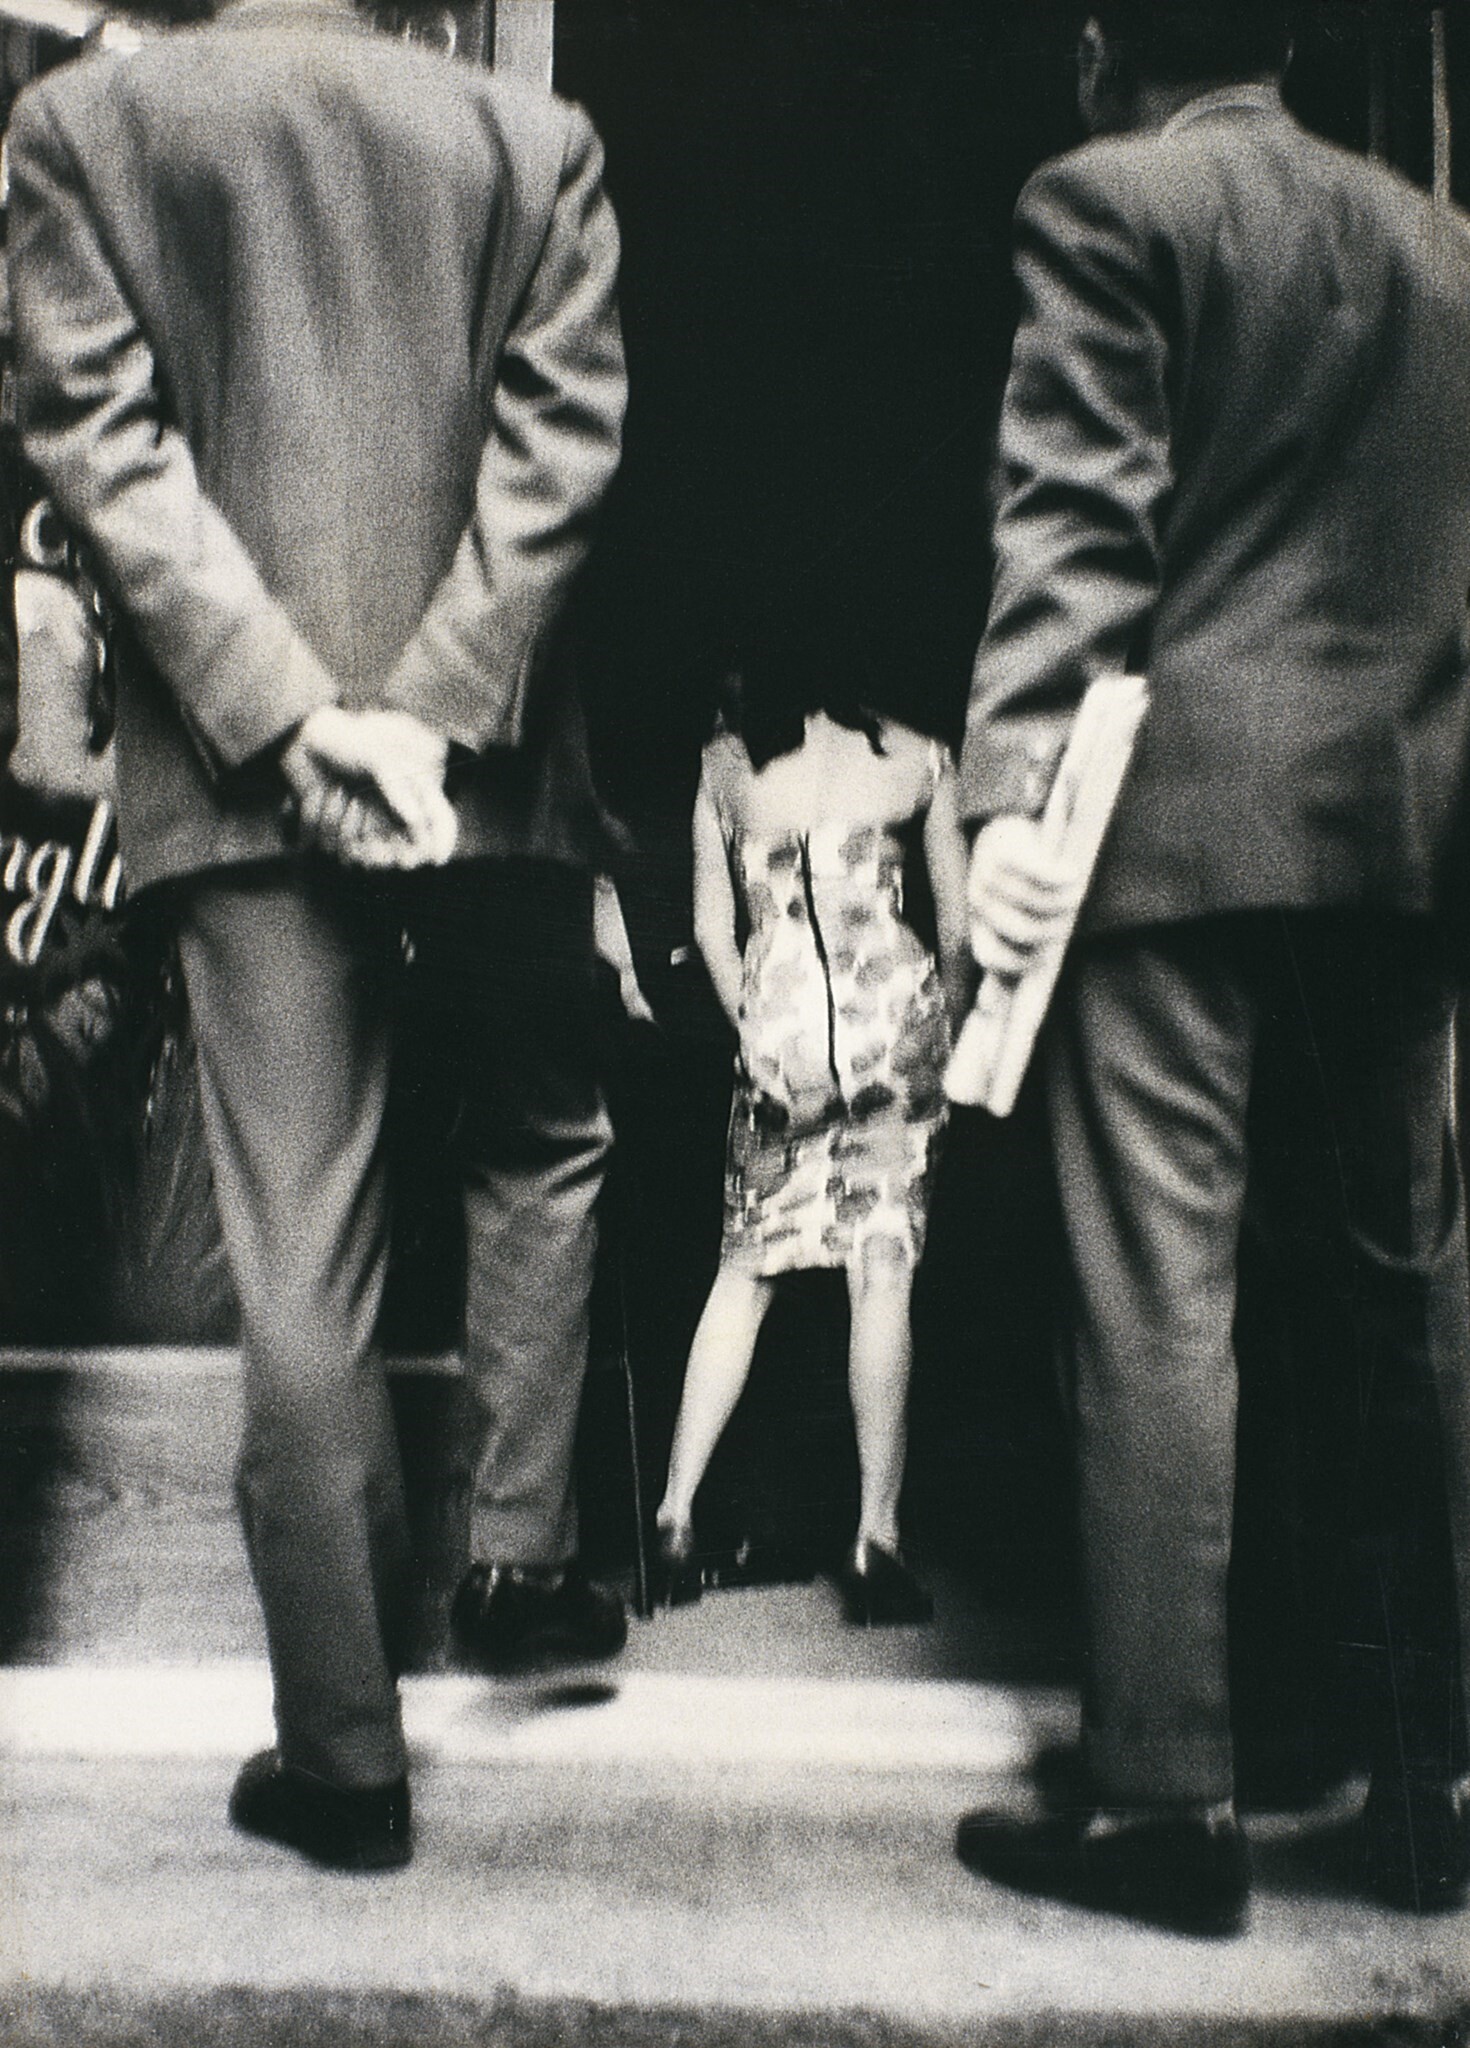 Барселона, ок. 1960. Фотограф Жоан Колом